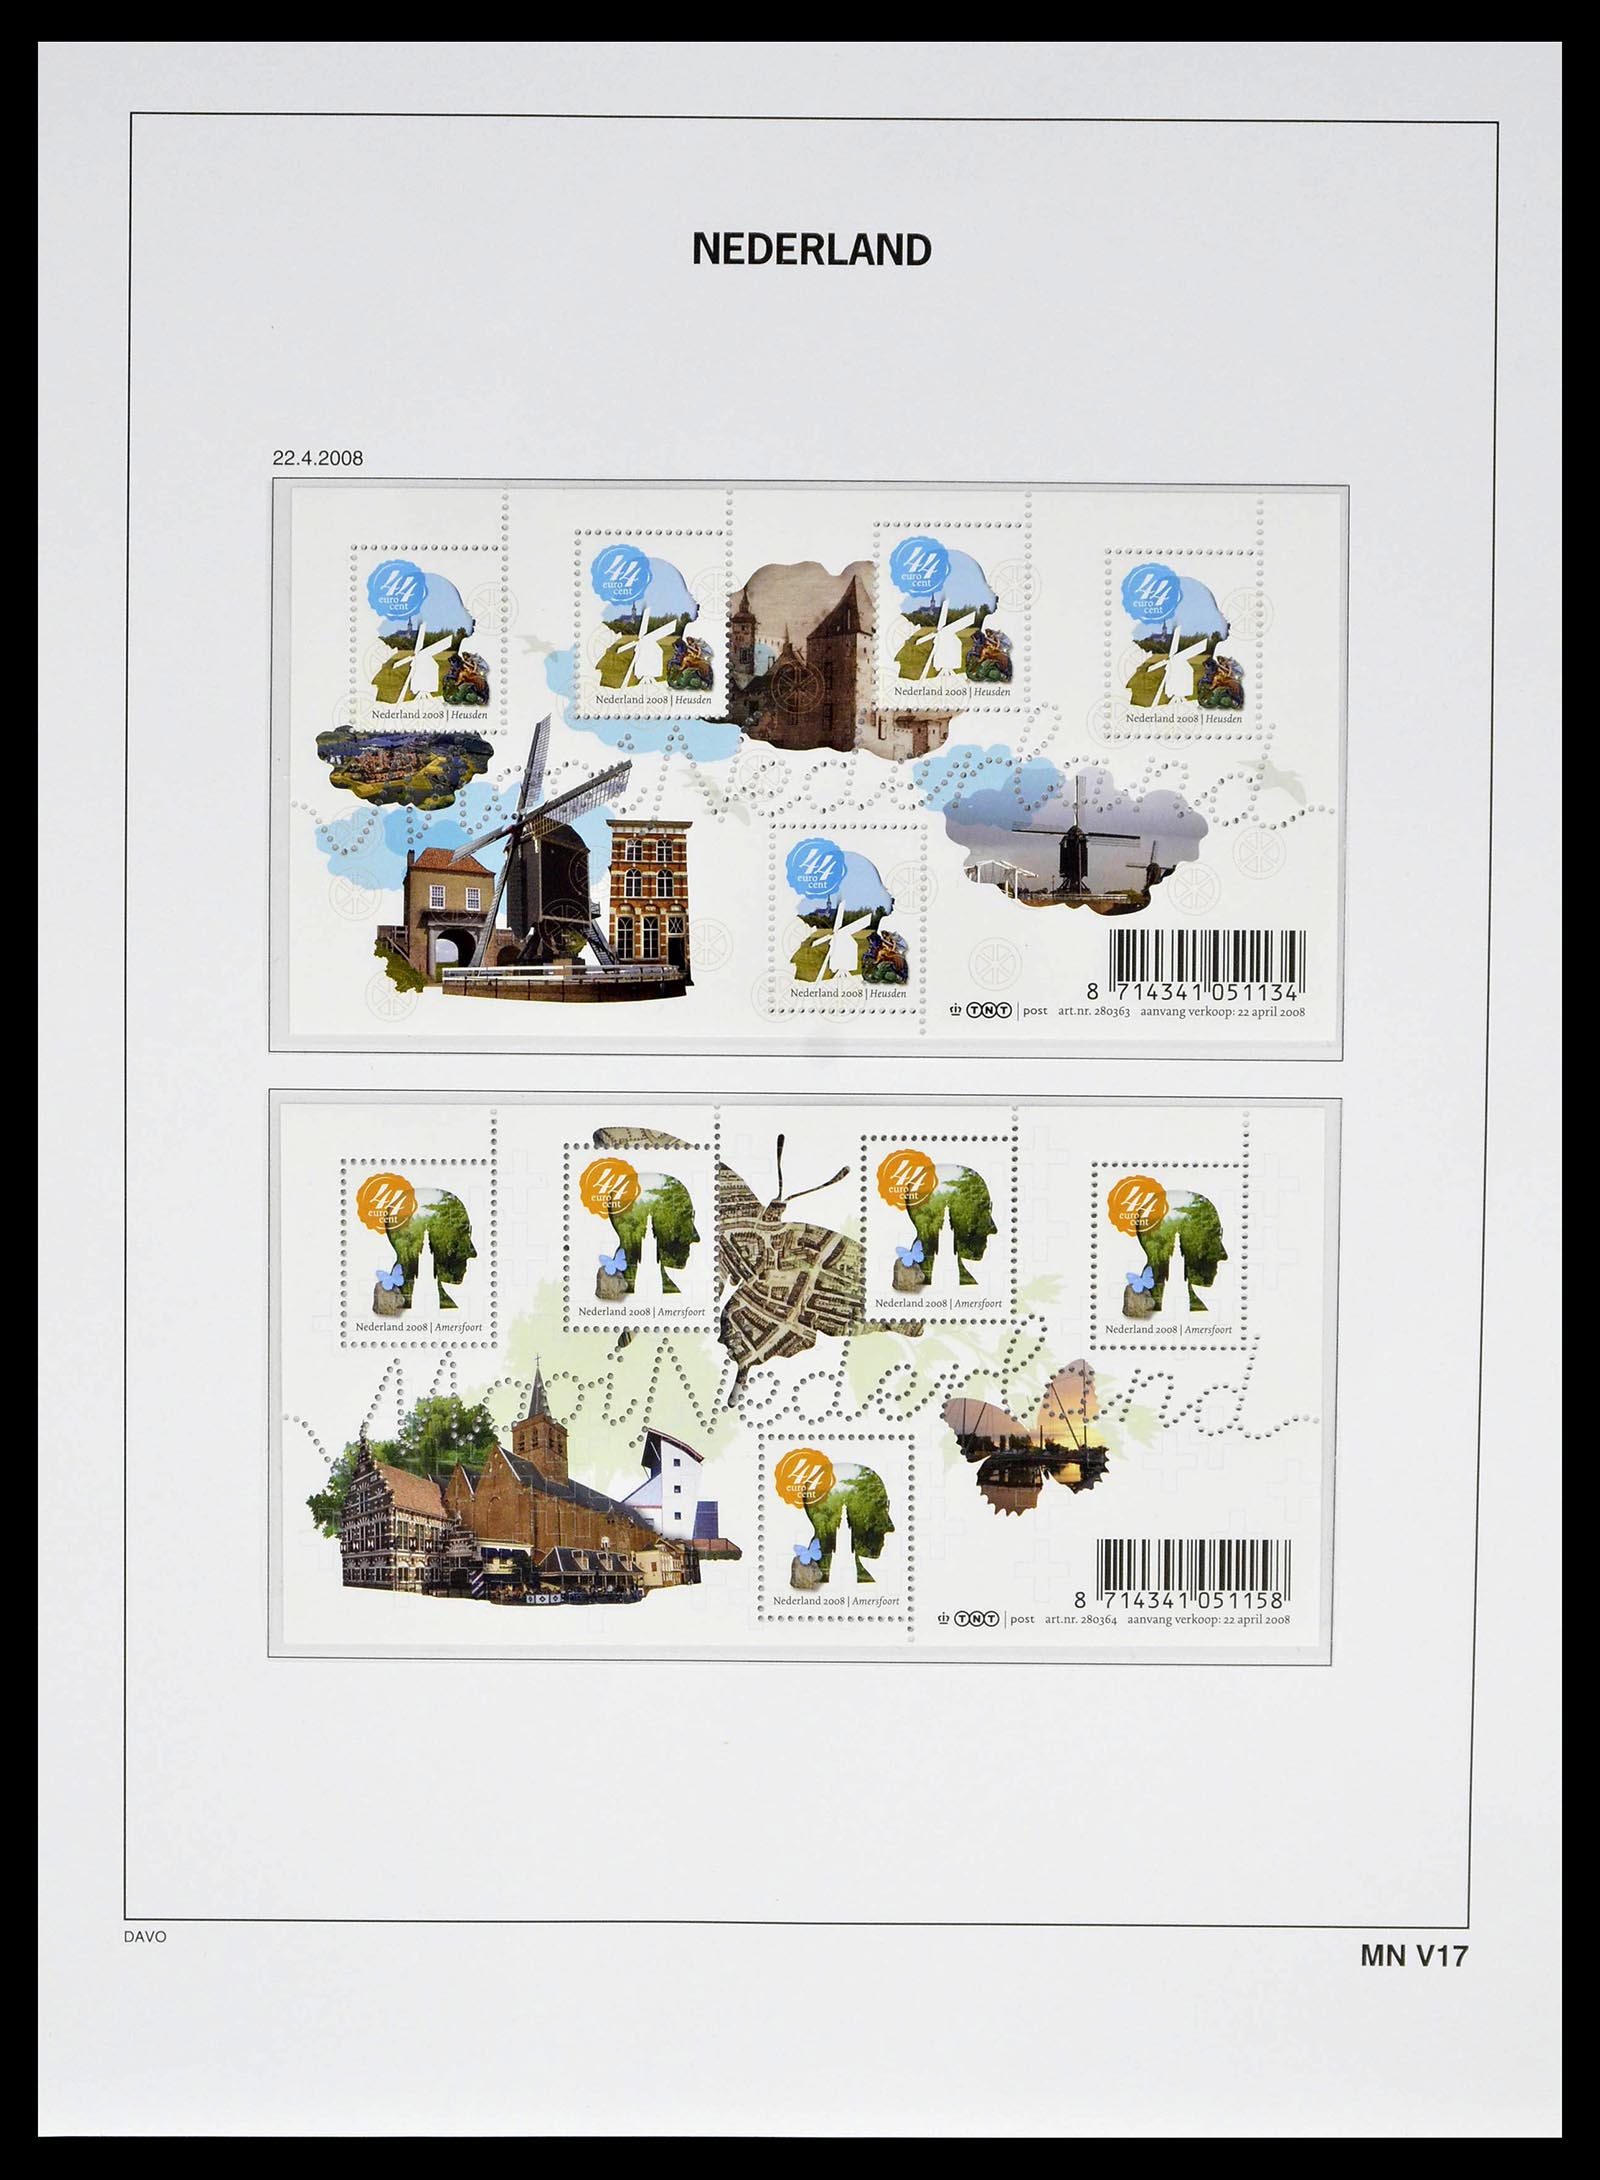 39134 0236 - Stamp collection 39134 Netherlands sheetlets 1992-2019!